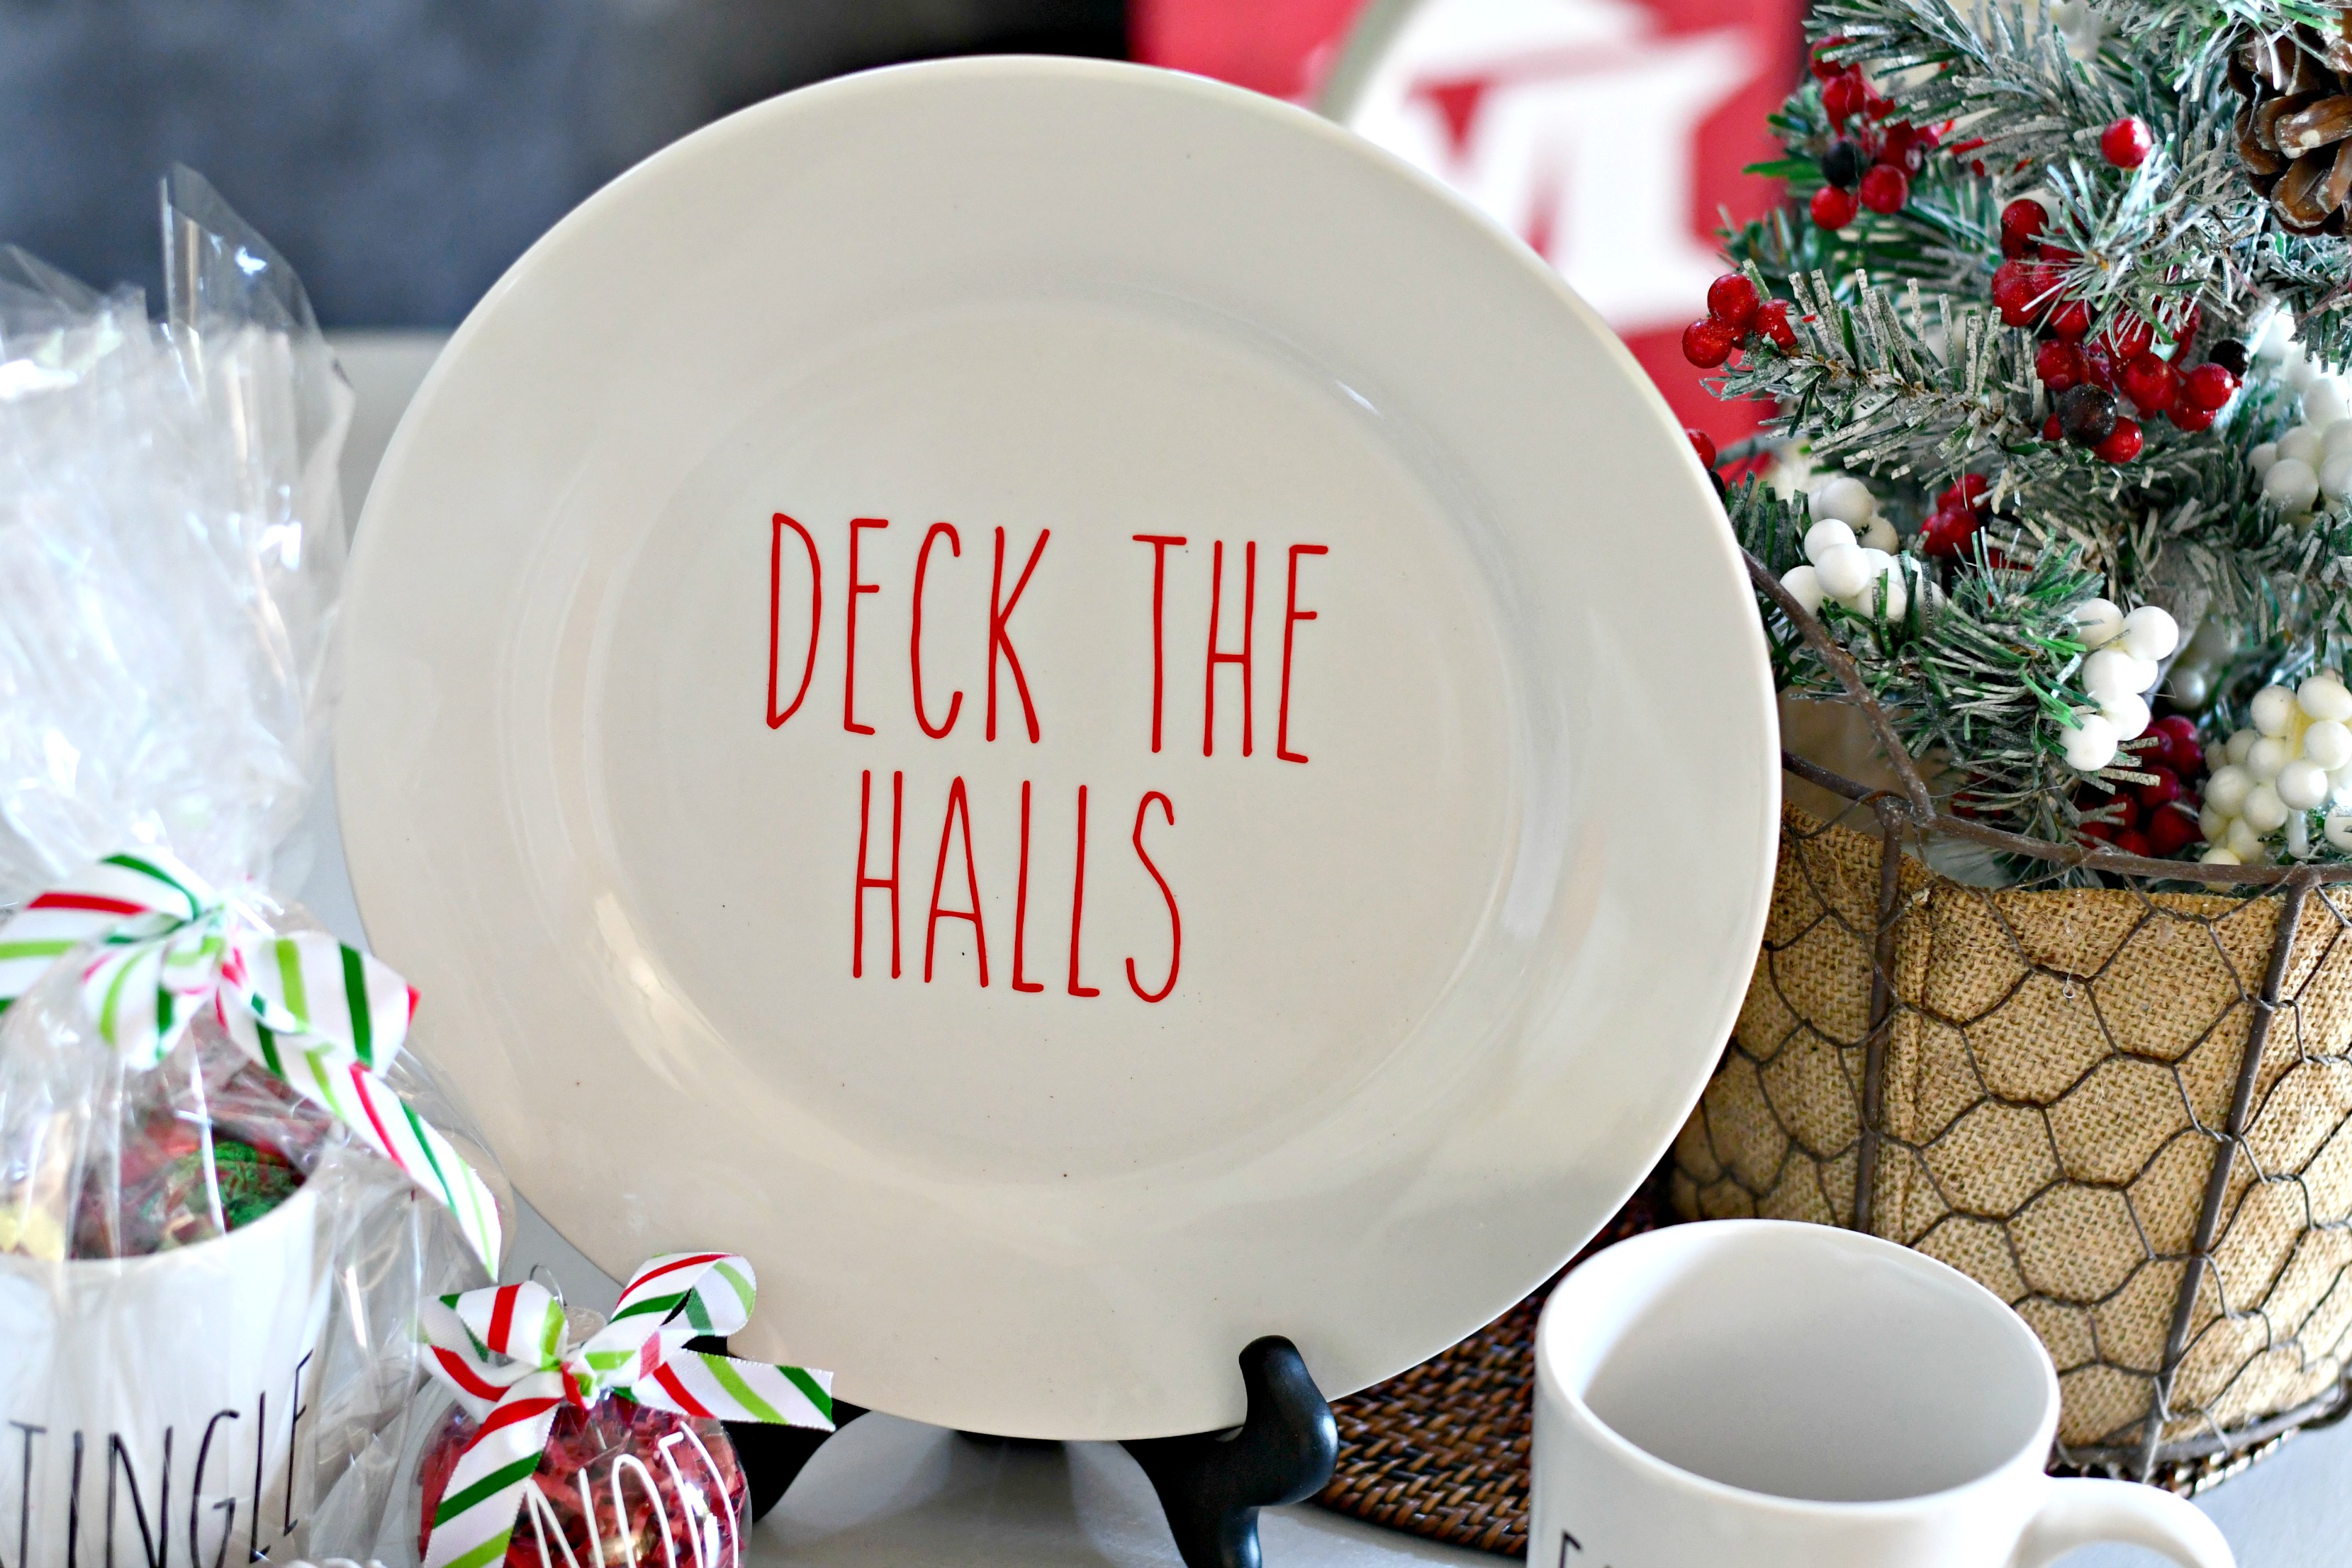  deck the halls christmas plate